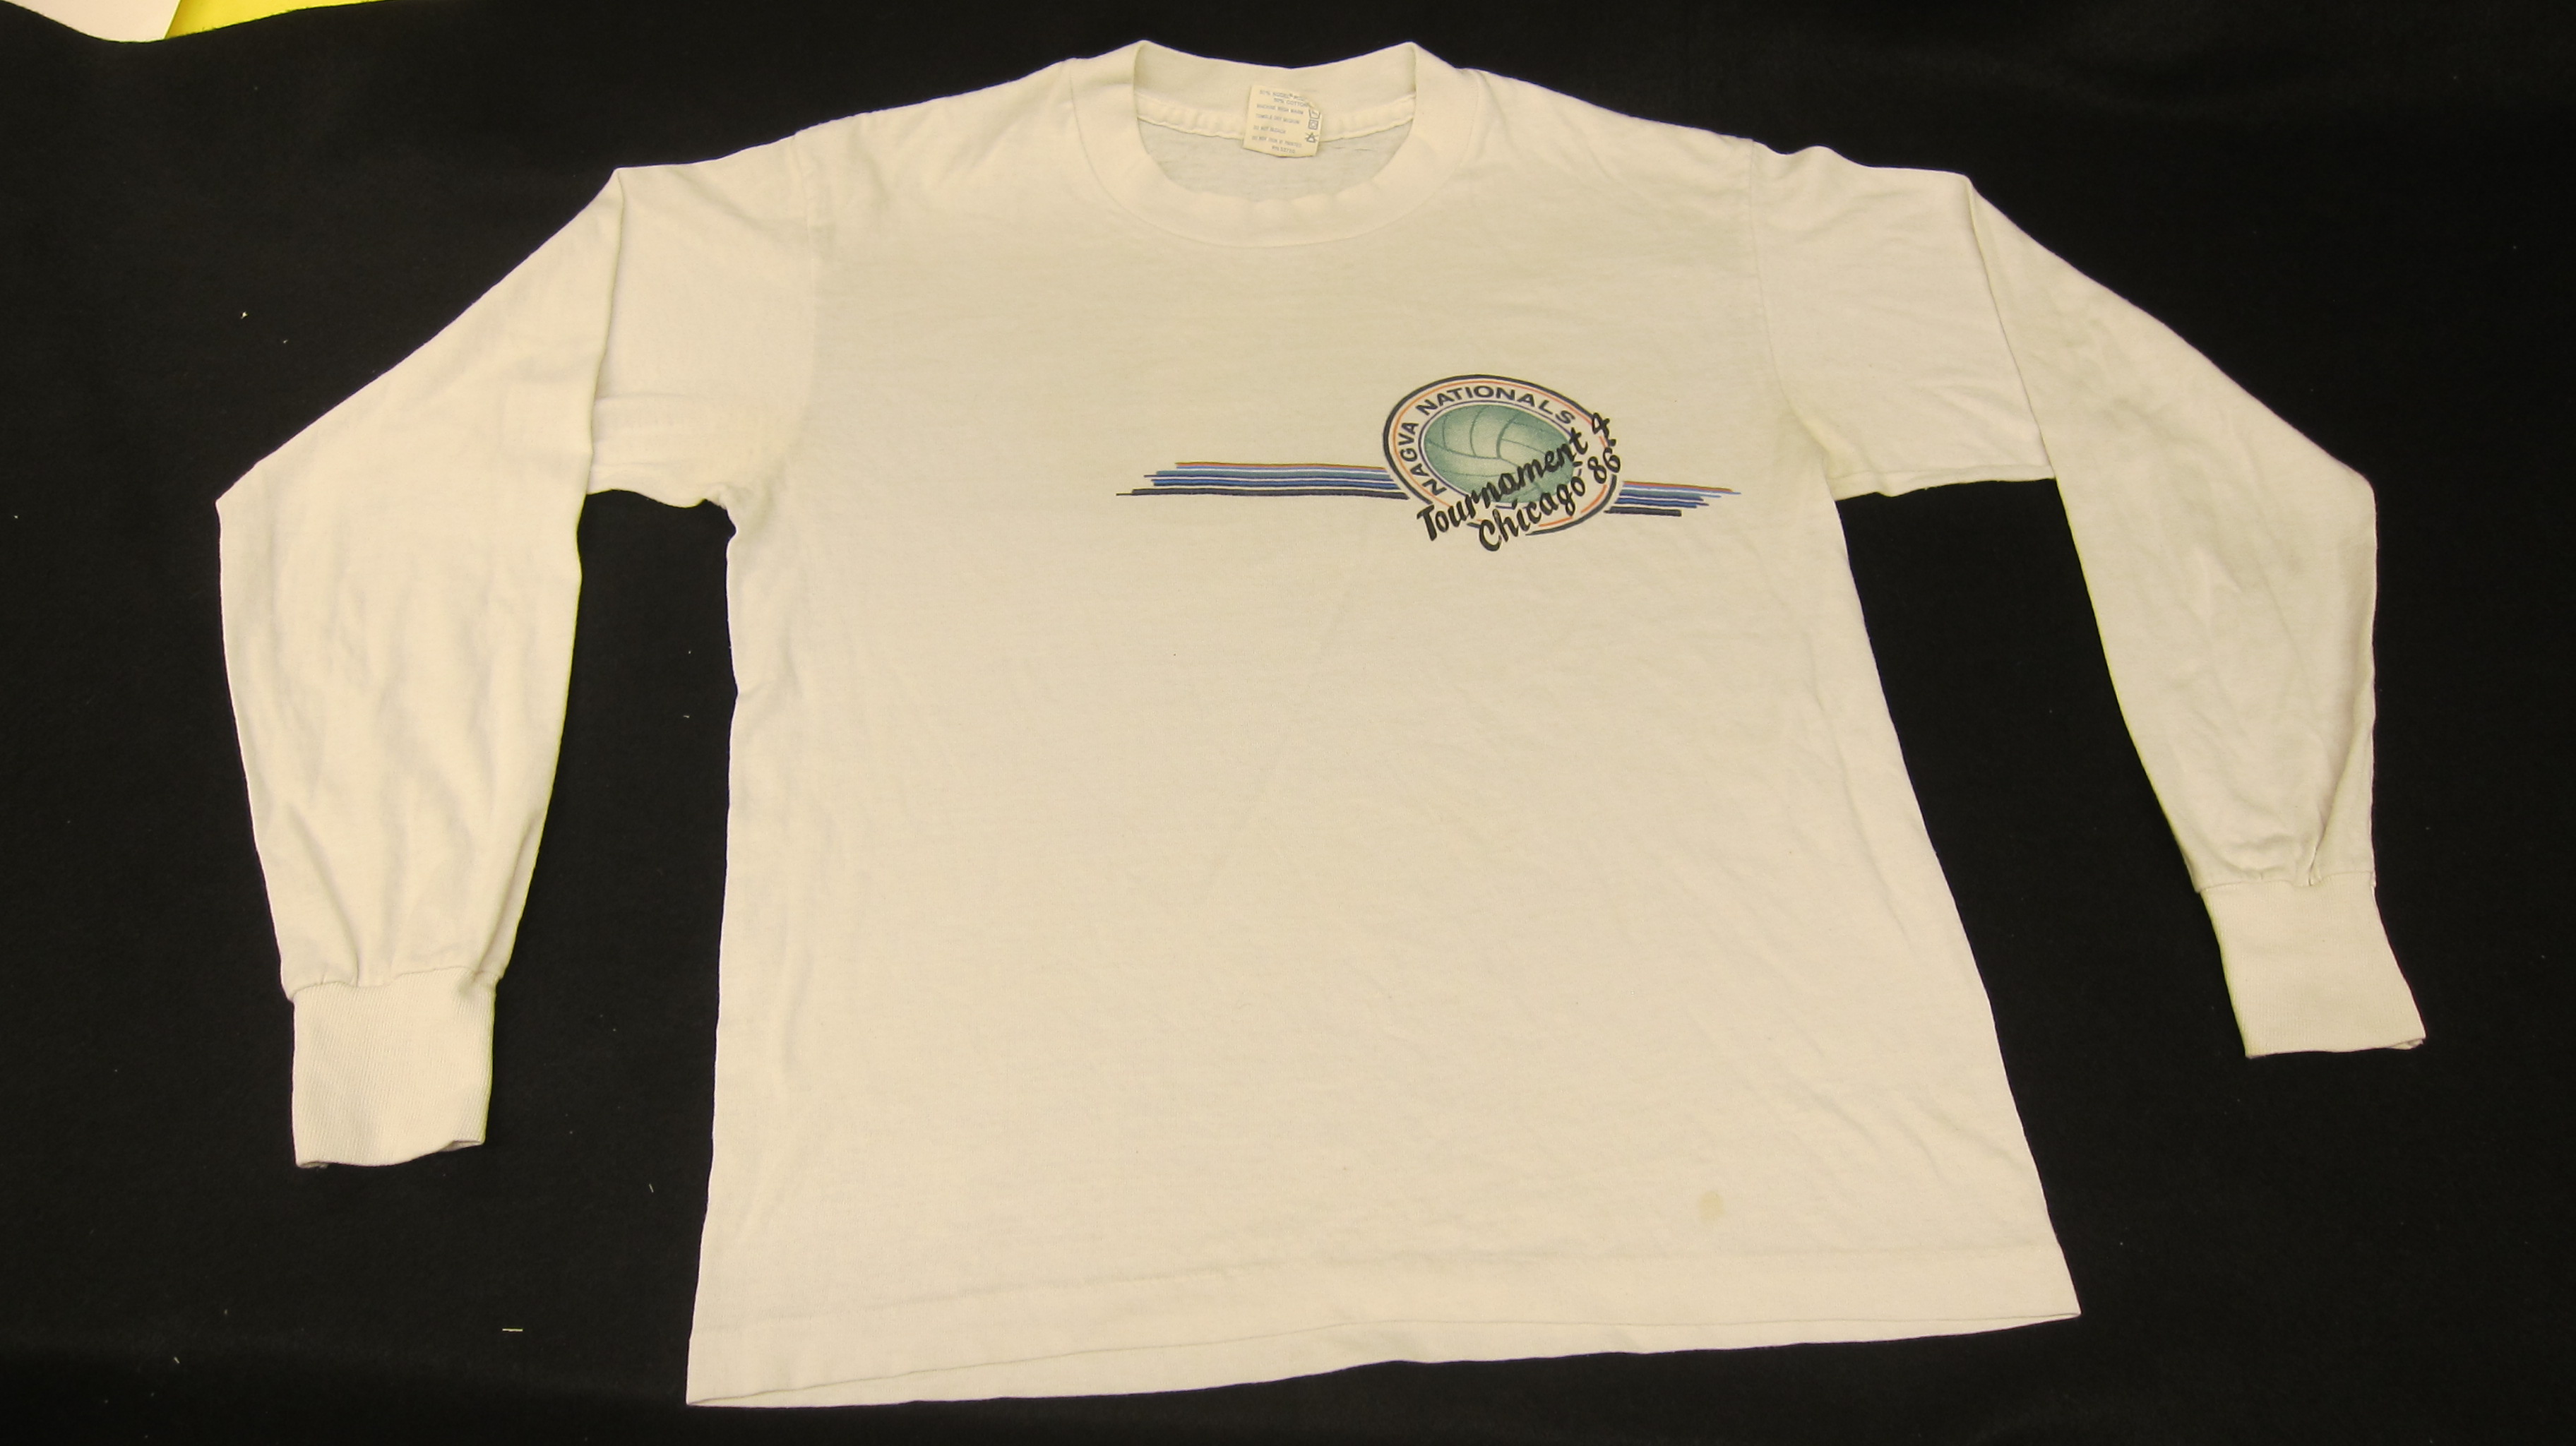 NAGAVA Nationals Tournament 4 Chicago '86'', Long Sleeve Shirt (white) -  1986